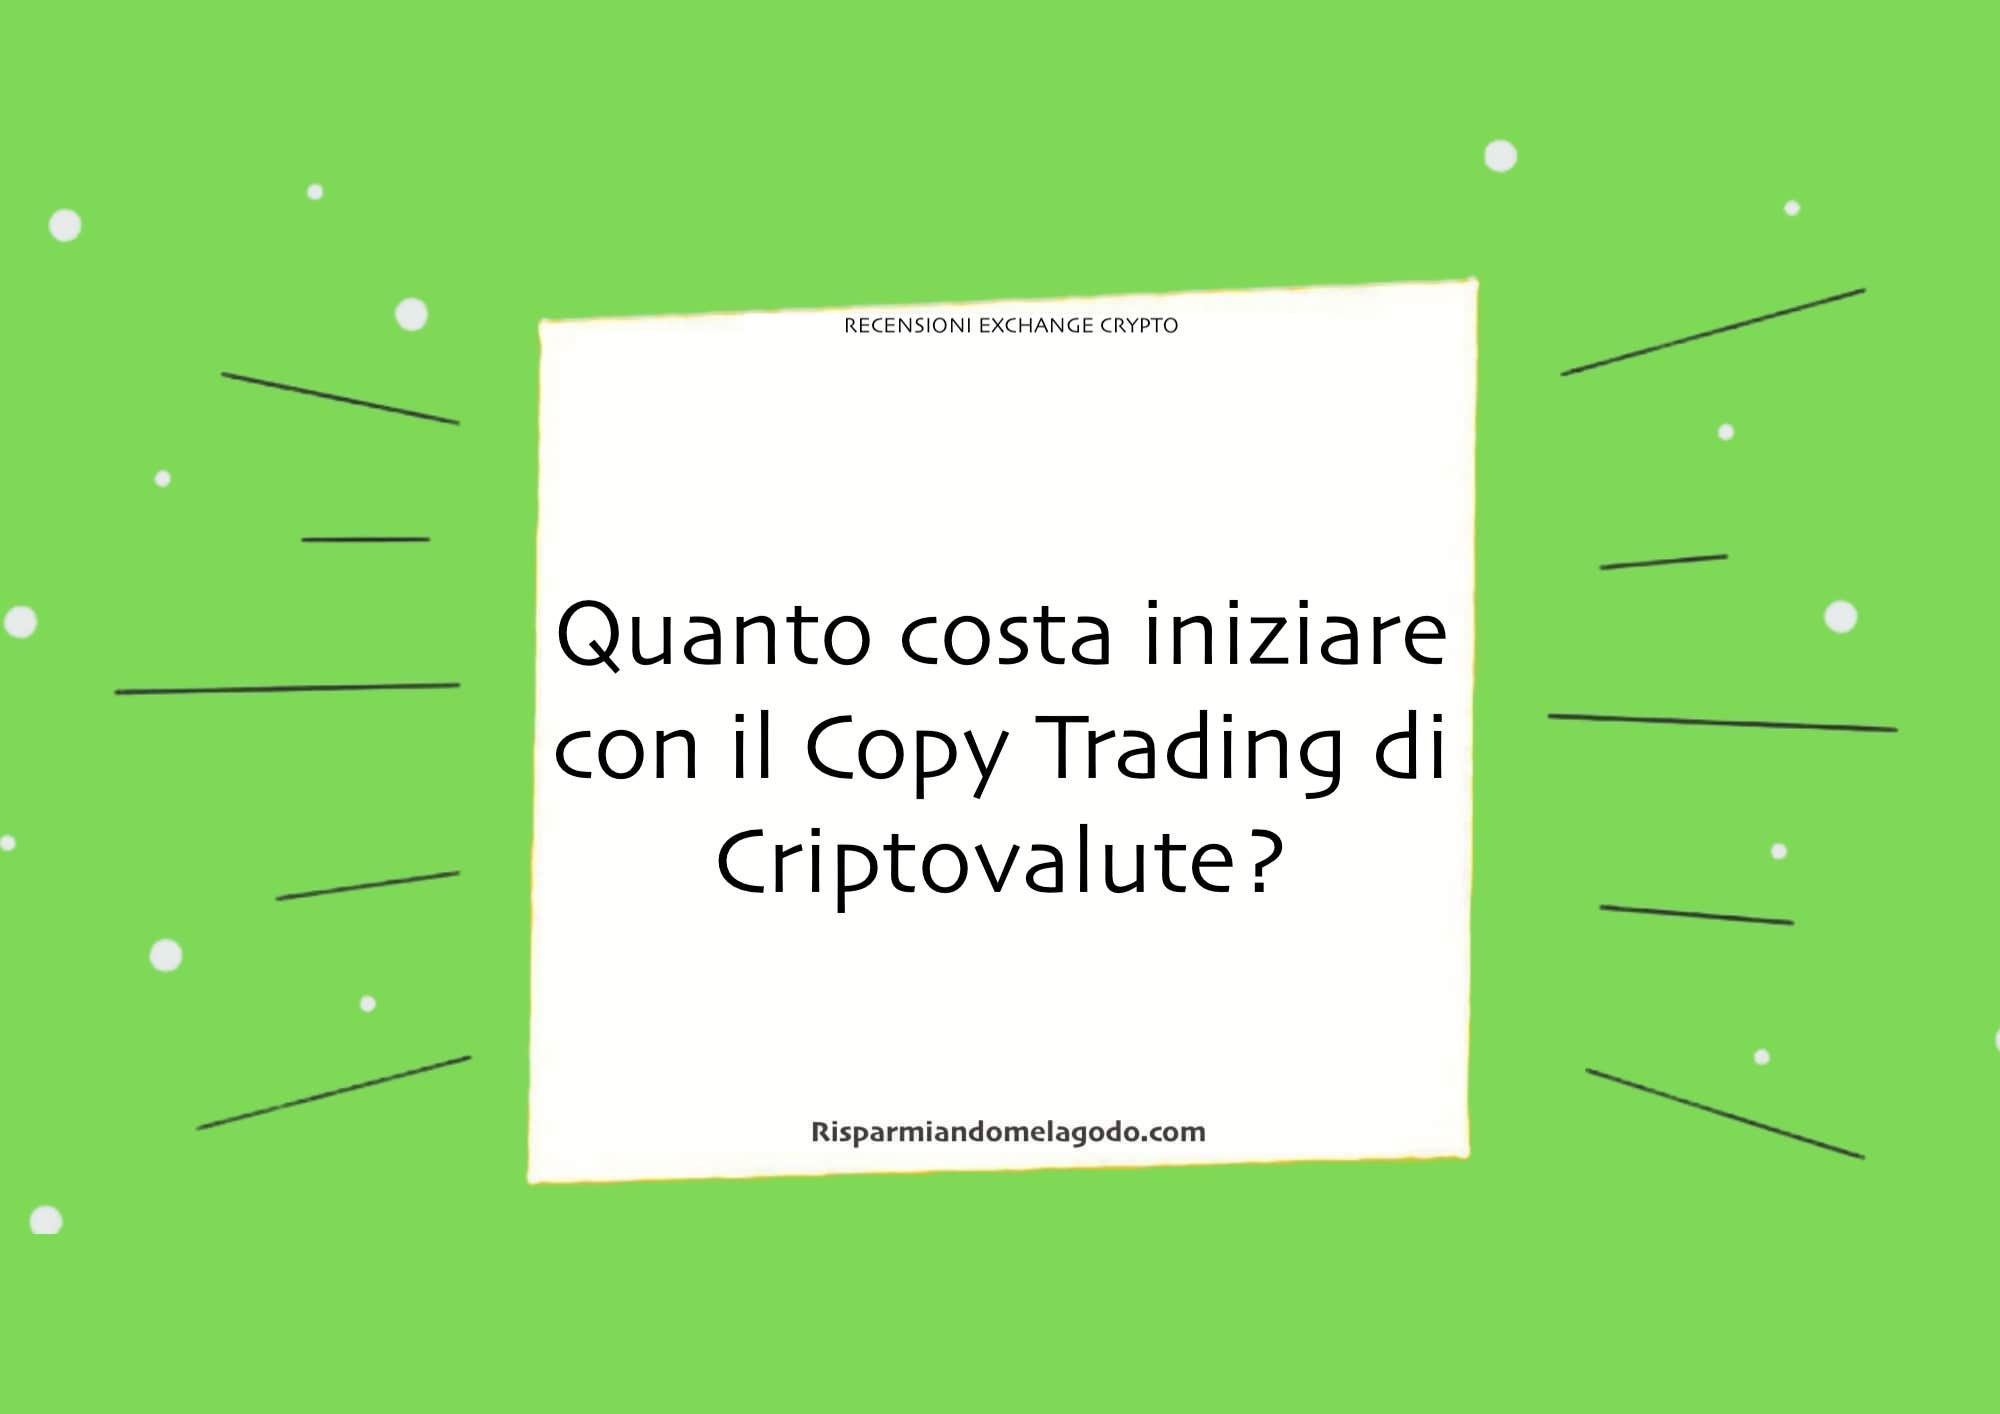 Quanto costa iniziare con il Copy Trading di Criptovalute?